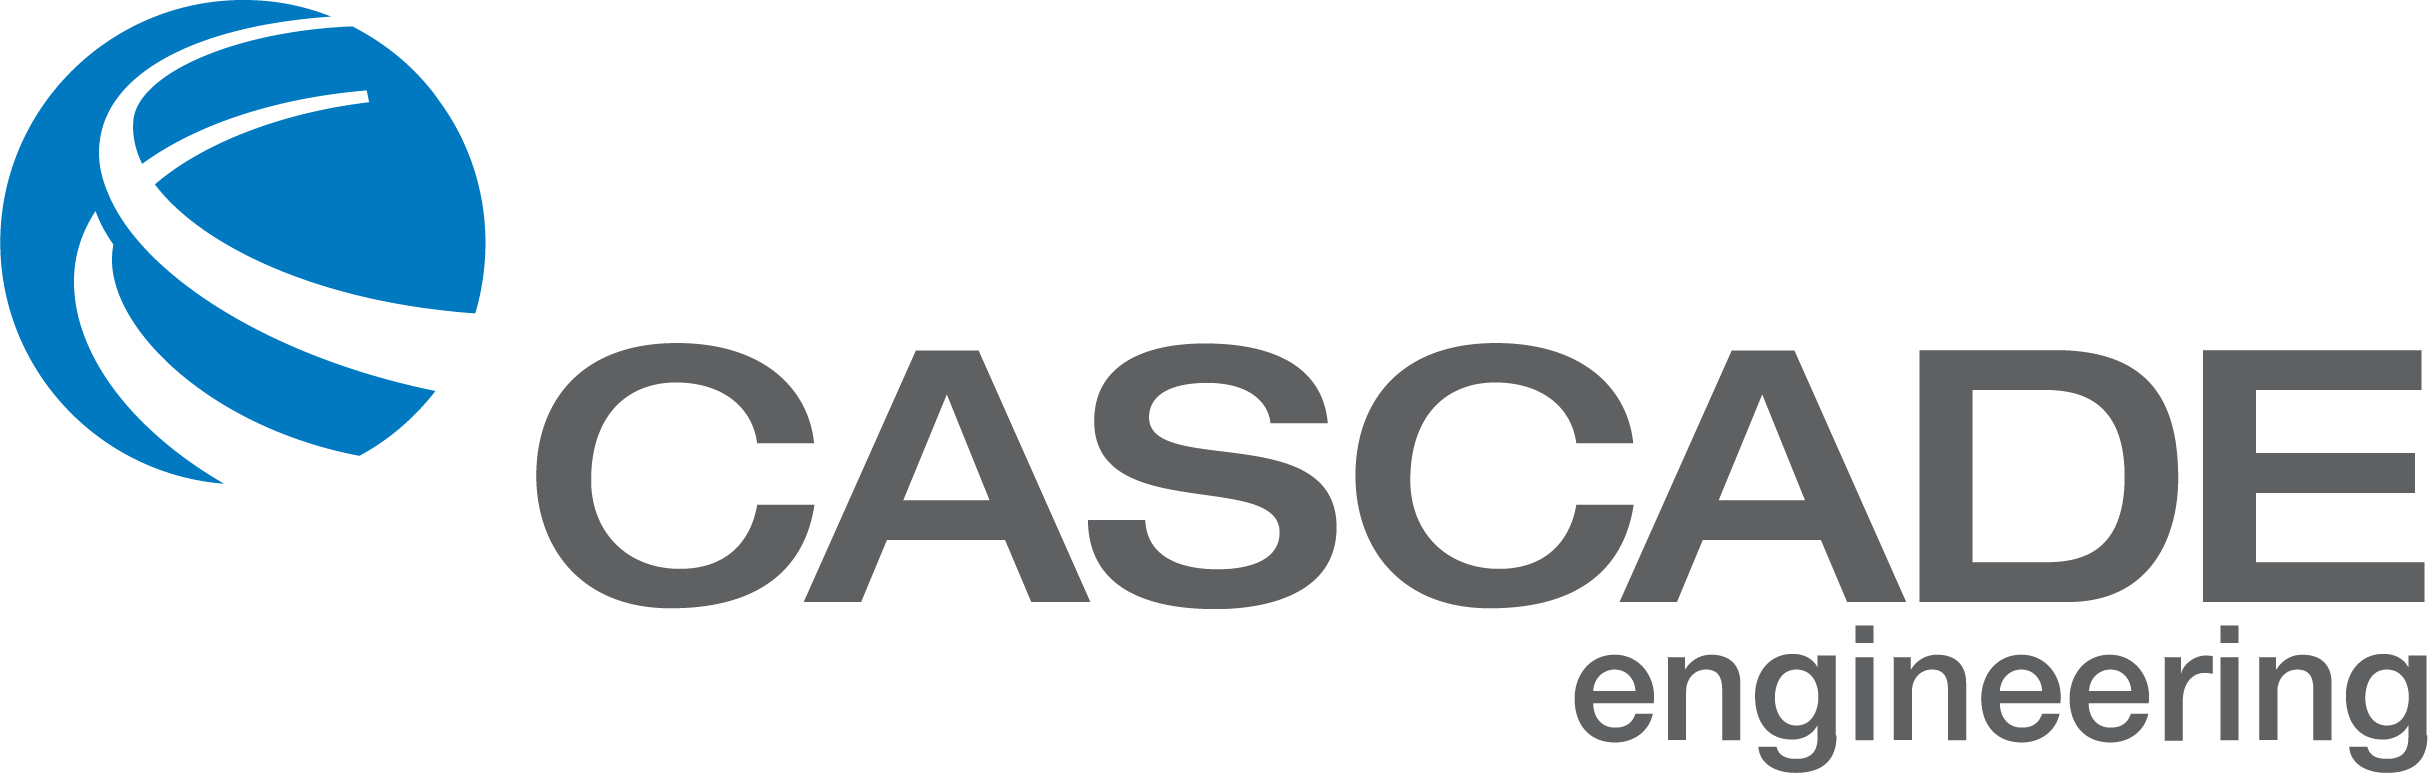 Cascade Logo - logo-full-cascade-engineering-color-logo | Yo Chef's Catering